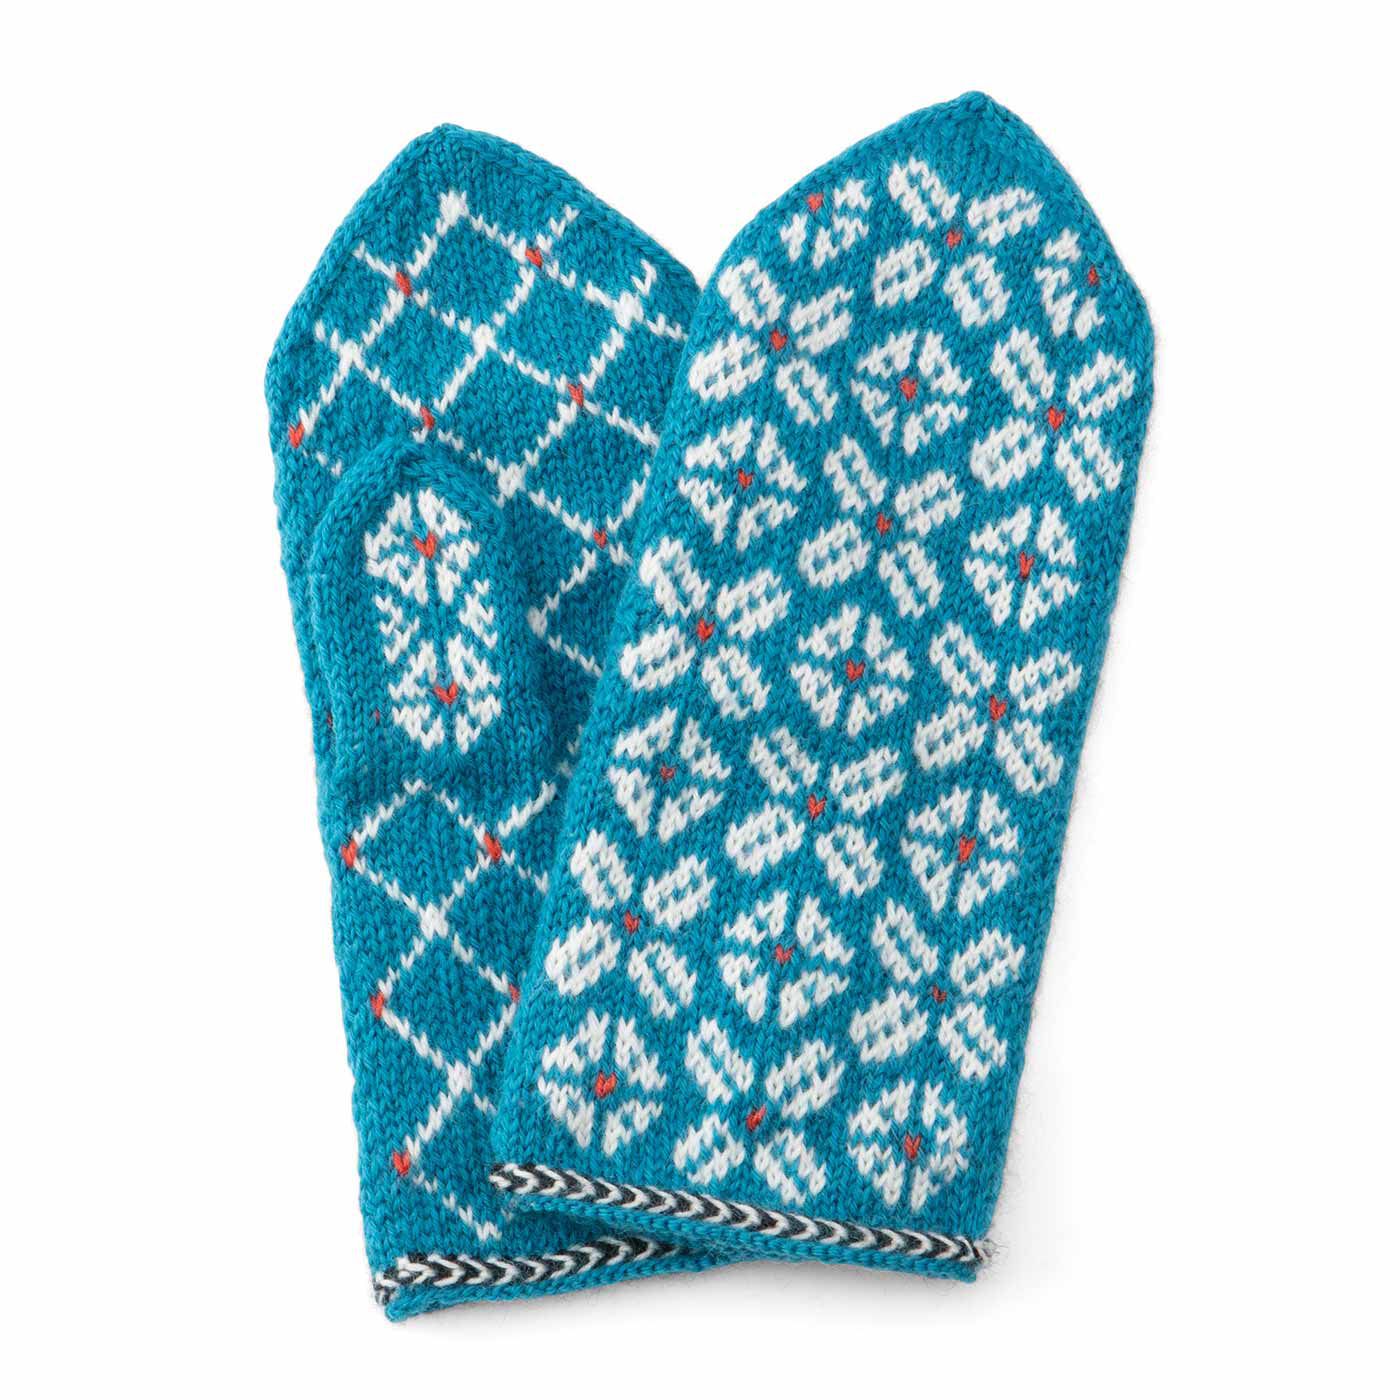 クチュリエ|ラトビアにあこがれて 編み込み模様がかわいい 三角あたまのミトンの会|しあわせの四葉のミトン　手の平、甲、親指まで模様が違うこだわりのデザイン。